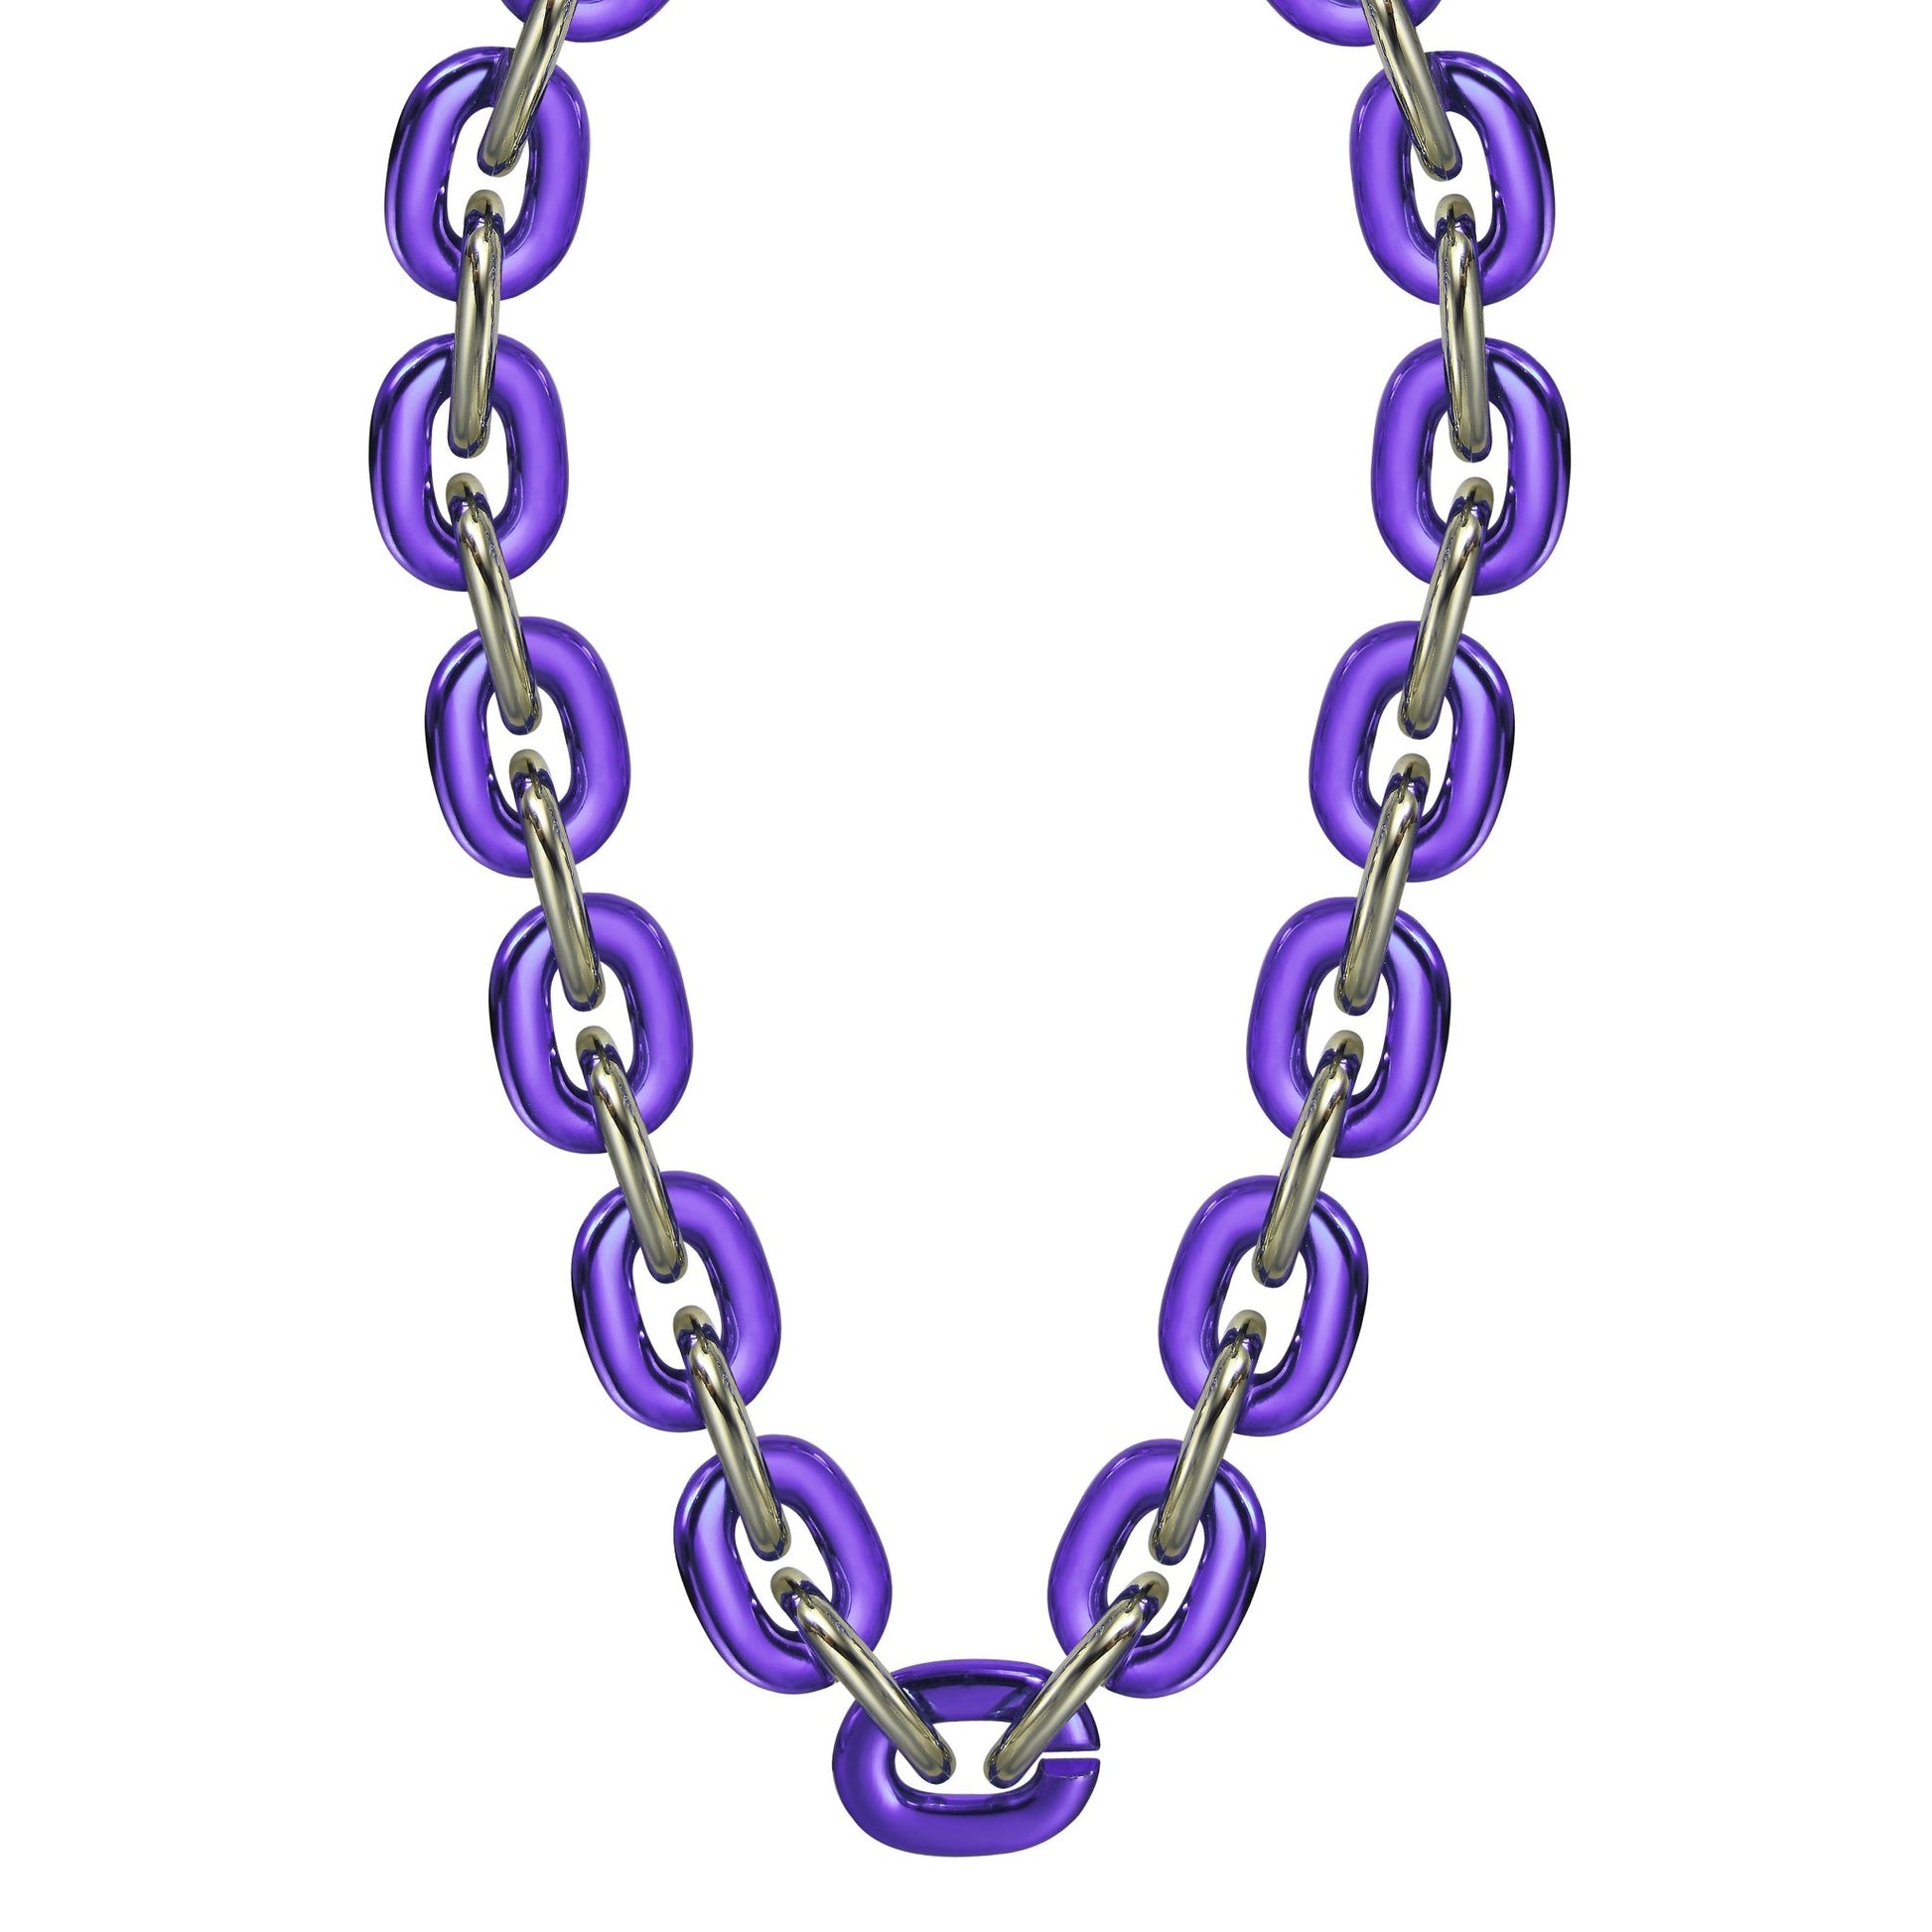 Jumbo Fan Chain Necklace - Gamedays Gear - Blue Purple / Light Gold